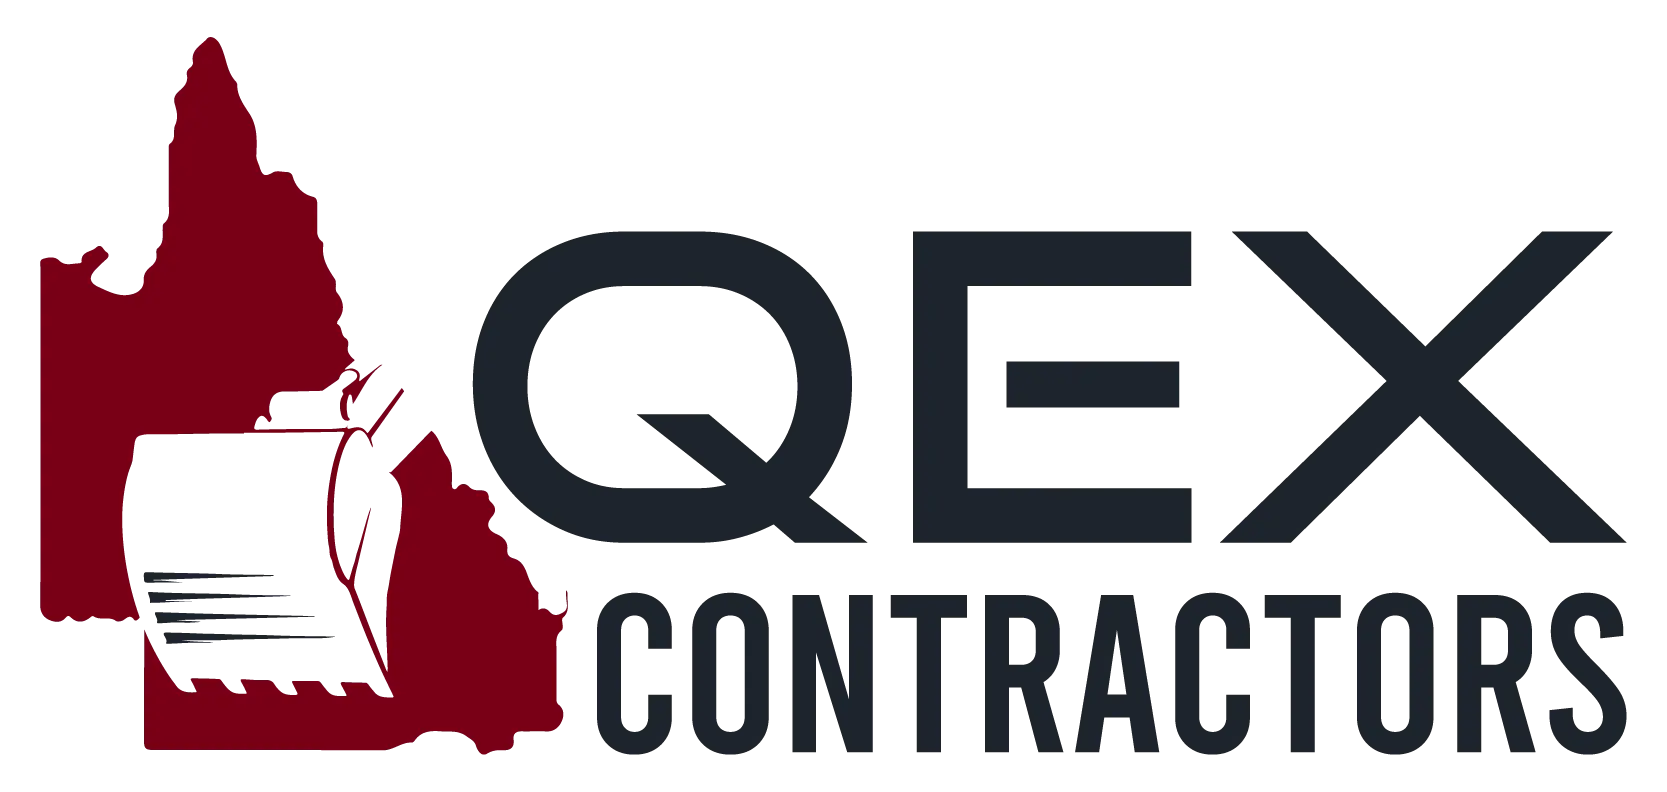 Qex Contracting logo in header